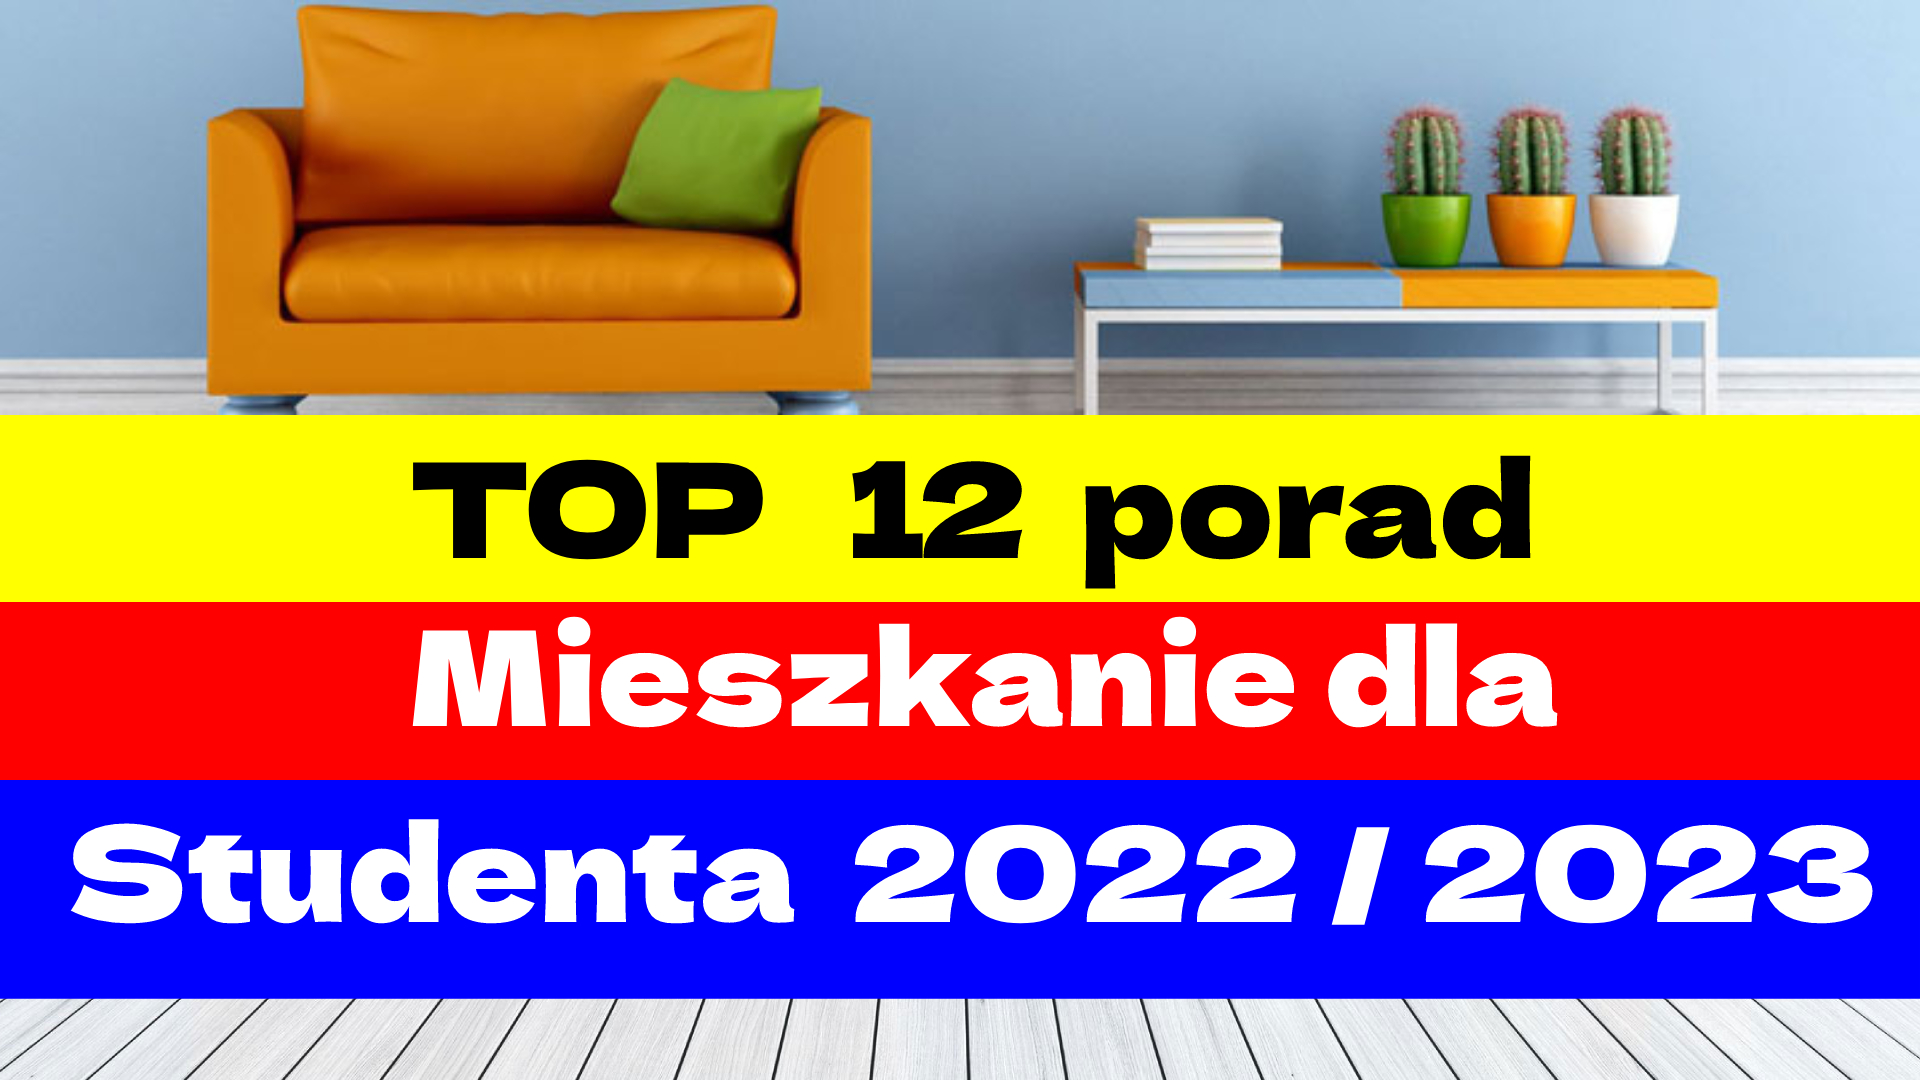 Mieszkanie dla Studenta 2022 / 2023. TOP 12 porad jak bezpiecznie wynająć.